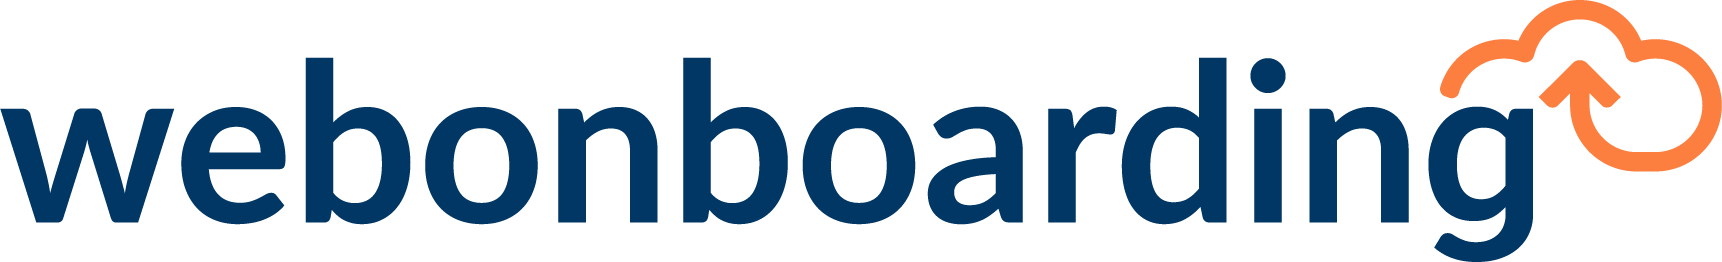 Webonboarding logo